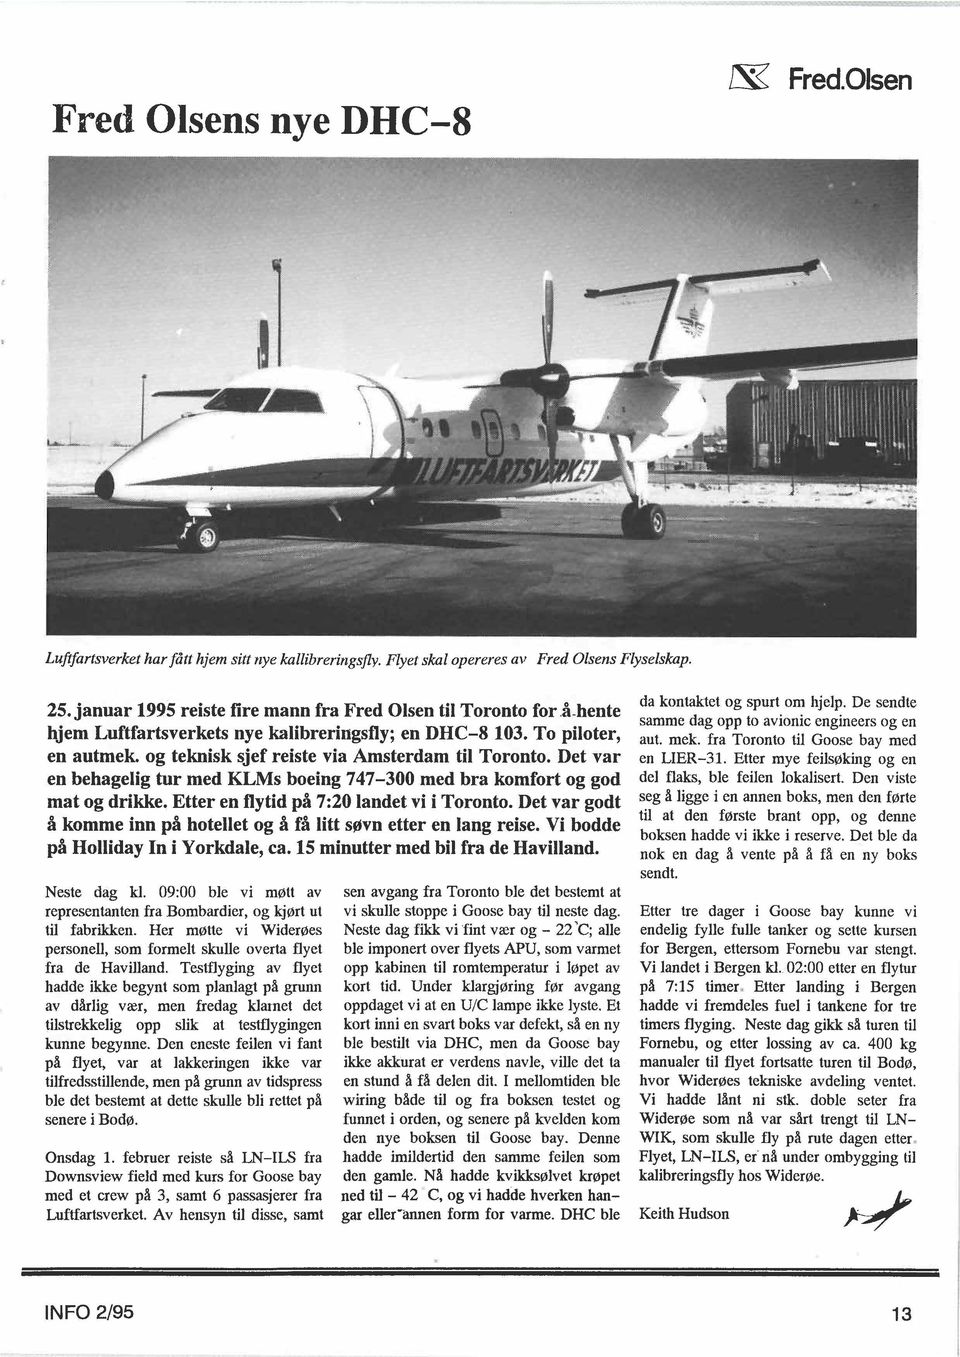 januar 1995 reiste fire mann fra Fred Olsen til Toronto for å-hente hjem Luftfartsverkets nye kalibreringsfly; en DHC-8 103. To piloter,,, en autmek. og teknisk sjef reiste via Amsterdam til Toronto.